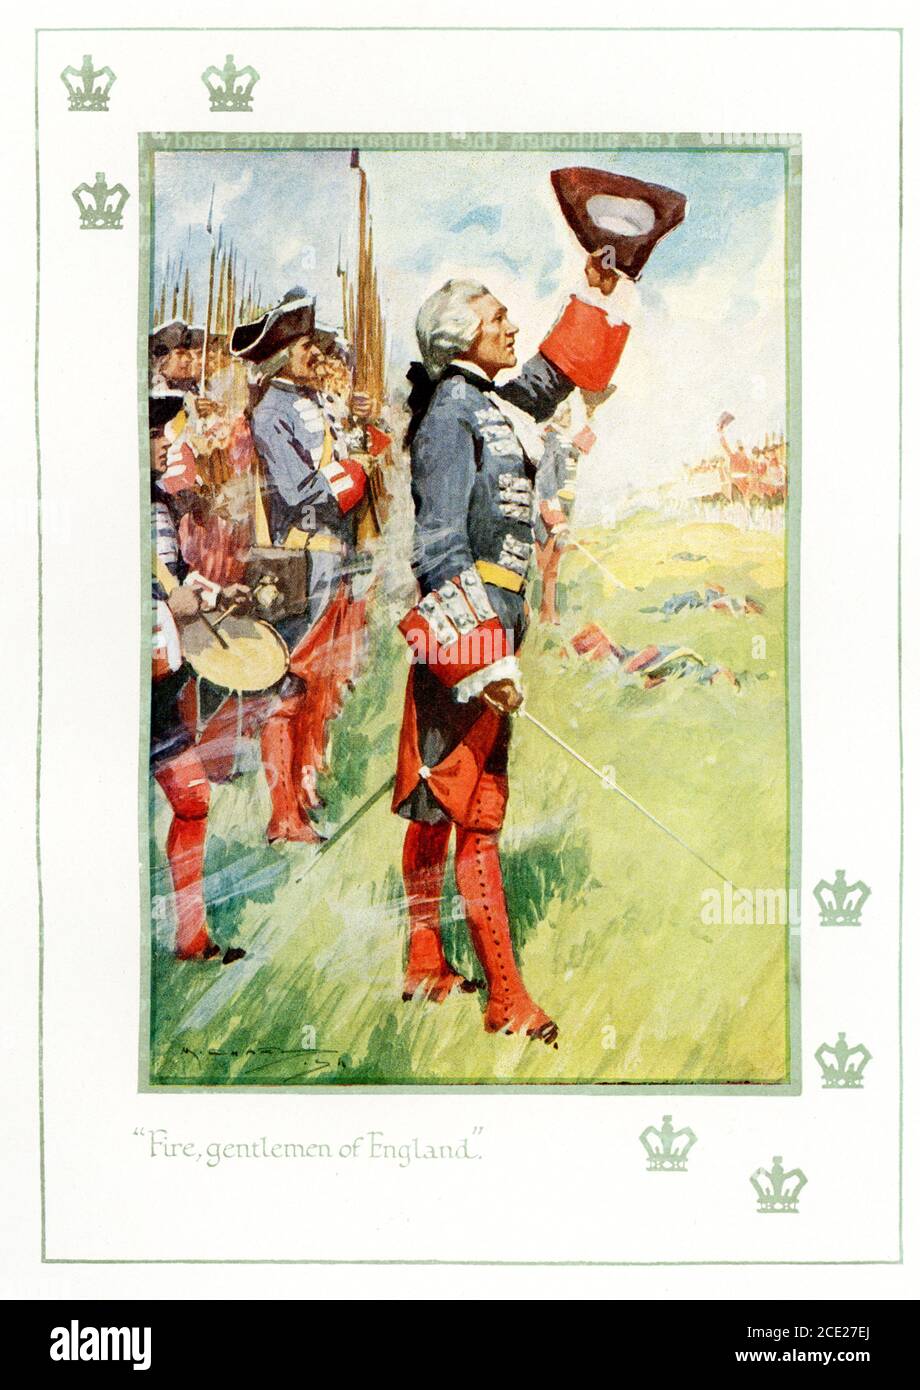 La légende se lit comme suit : pompiers d'Angleterre à l'époque de la bataille de Fontenoy de Louis XV 1745. La bataille de Fontenoy (11 mai 1745) était un engagement majeur de la guerre de succession autrichienne, menée entre les forces des alliés pragmatiques (principalement néerlandais, britannique, Et les troupes hanoveriennes, ainsi qu'un contingent relativement restreint d'Autrichiens sous le commandement du duc de Cumberland) et une armée française sous le commandement du roi Louis XV de France, avec le commandement réel sur le terrain détenu par Maurice de Saxe, commandant des forces de Louis XV dans les pays Bas. Banque D'Images